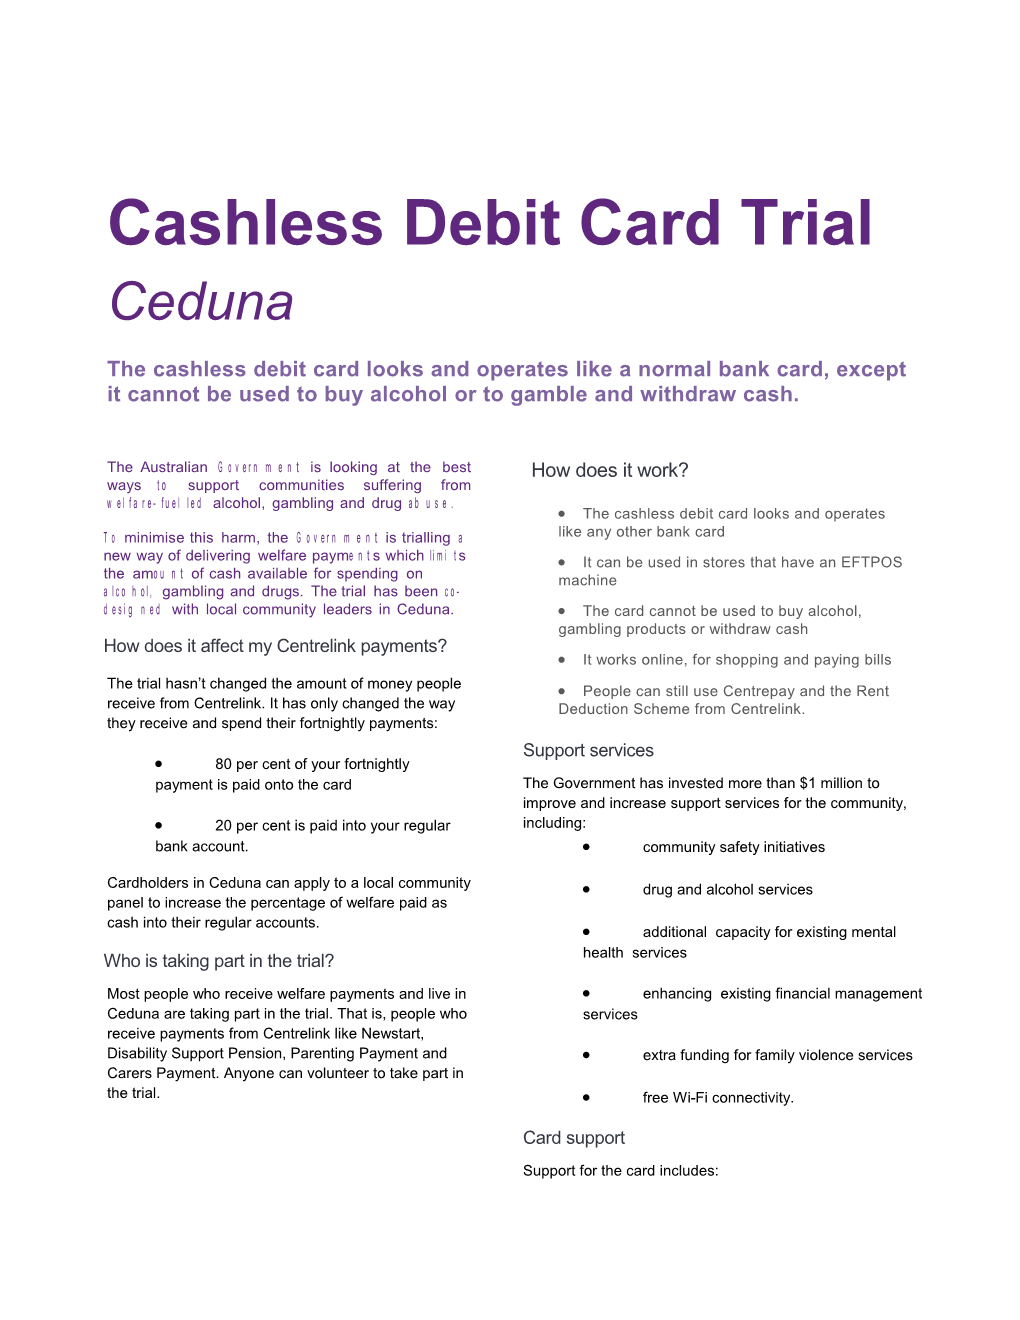 Cashless Debit Card Ceduna Fact Sheet